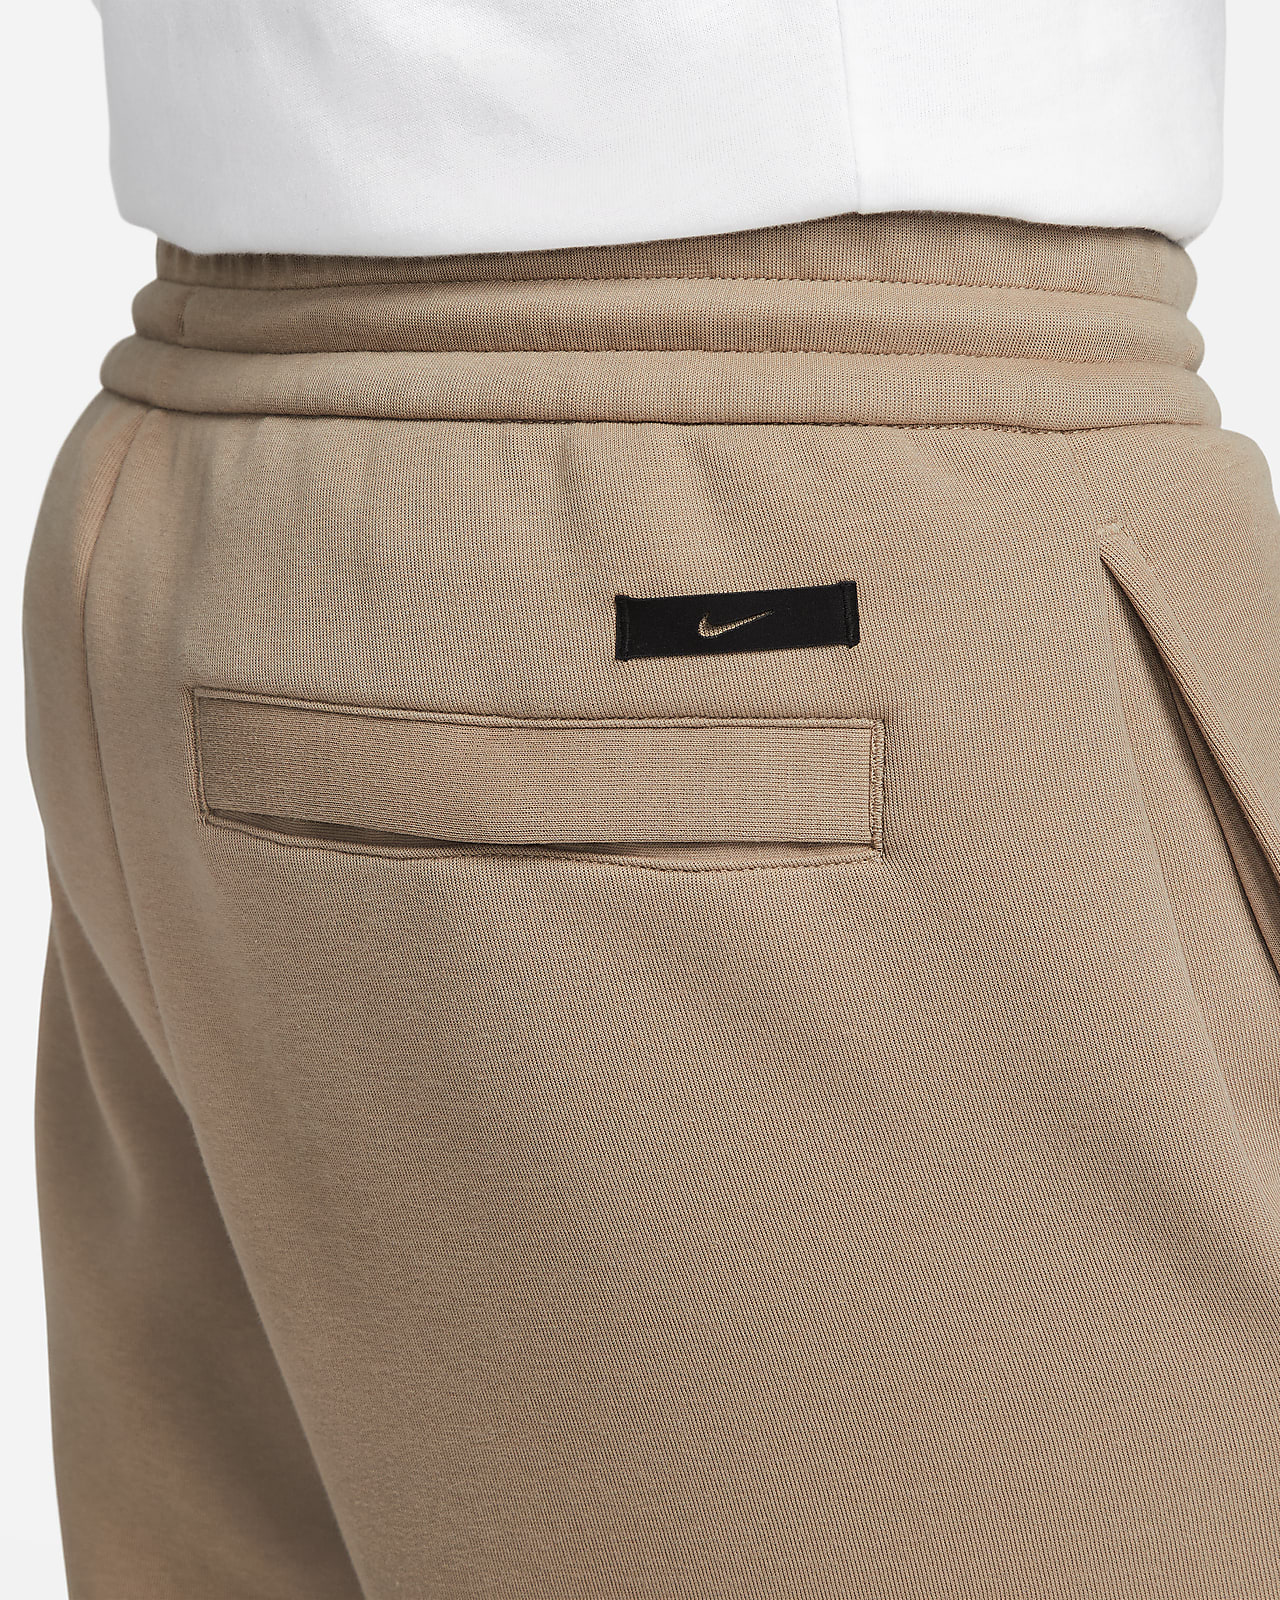 Nike Sportswear Essentials Womens Fleece Pants Tan Sweatpants